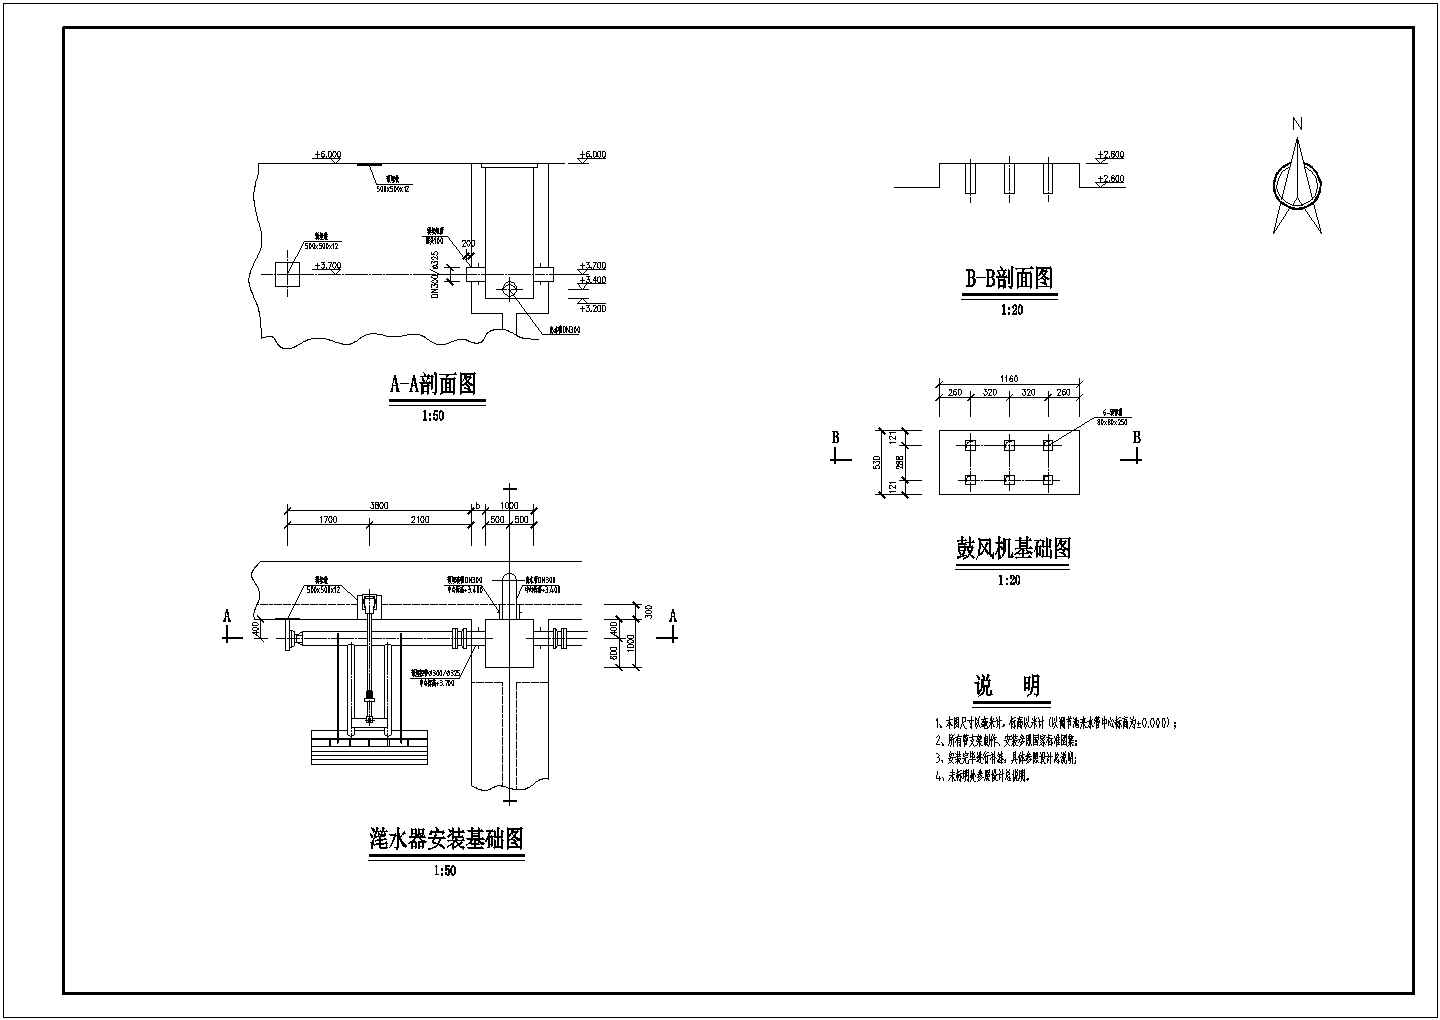 SBR池管线布置以及滗水器、鼓风机安装图